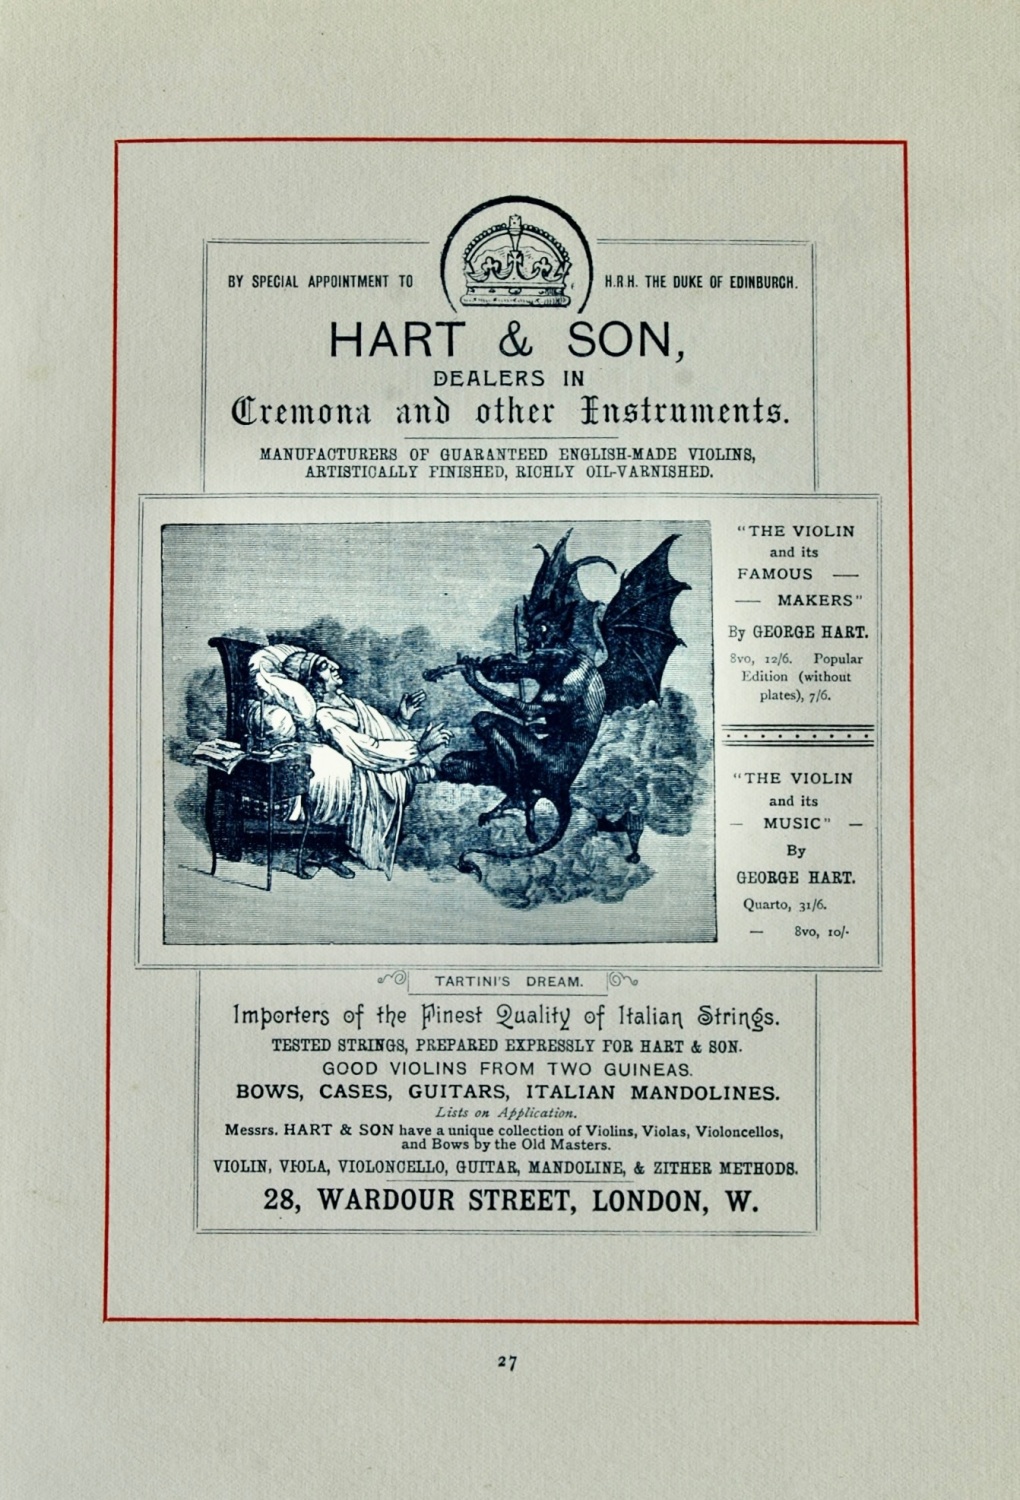 Hart & Son.  (Dealers in Musical Instruments) 28 Wardour Street, London, W.